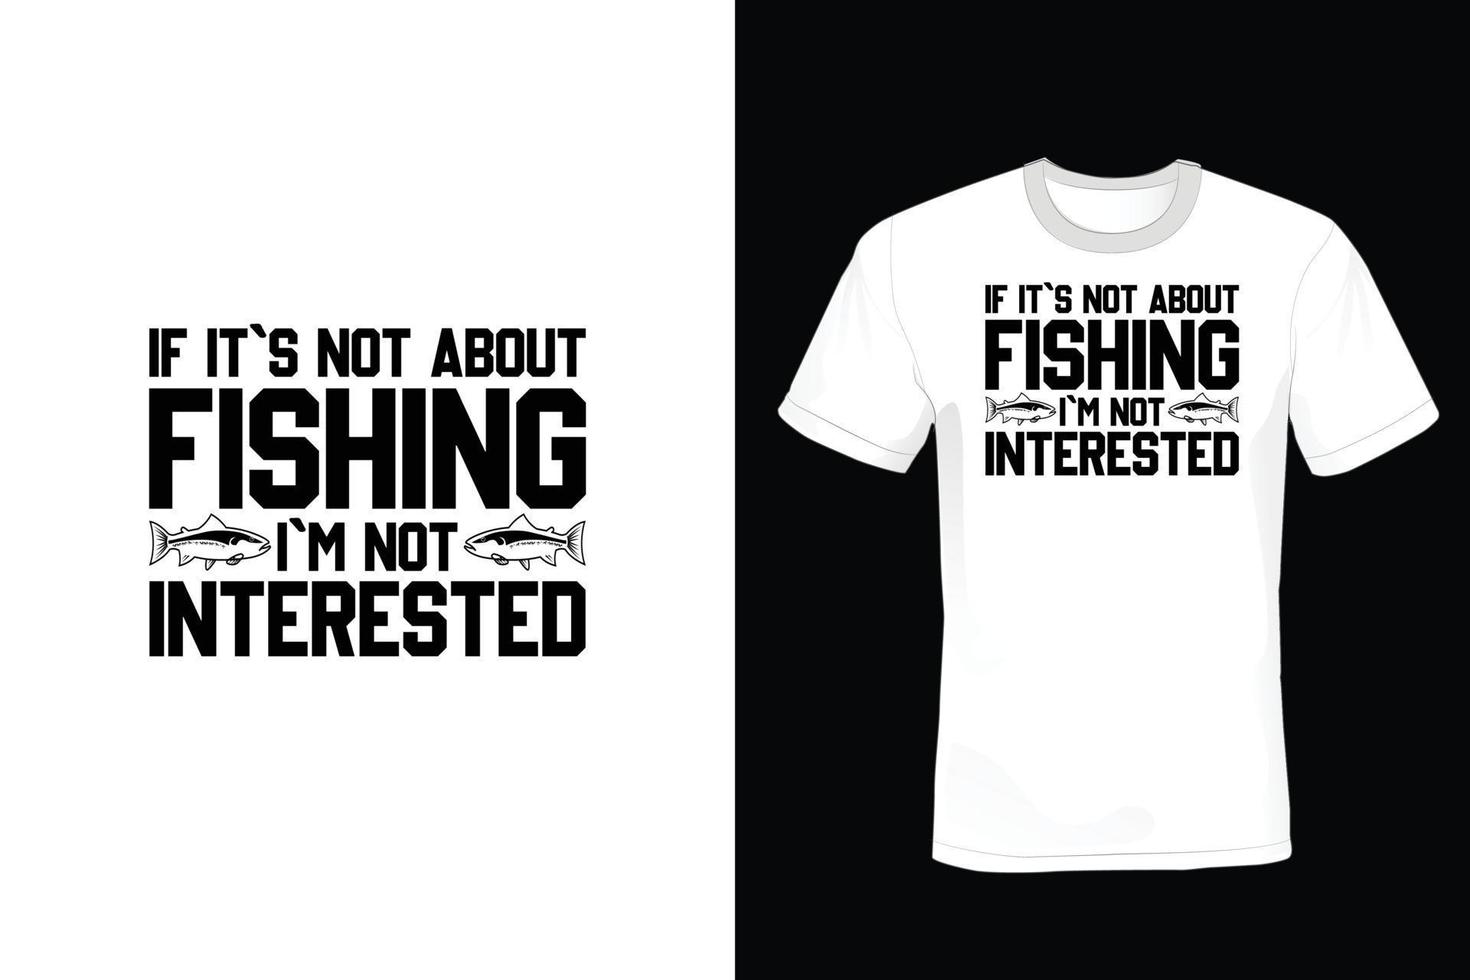 diseño de camiseta de pesca, vintage, tipografía vector